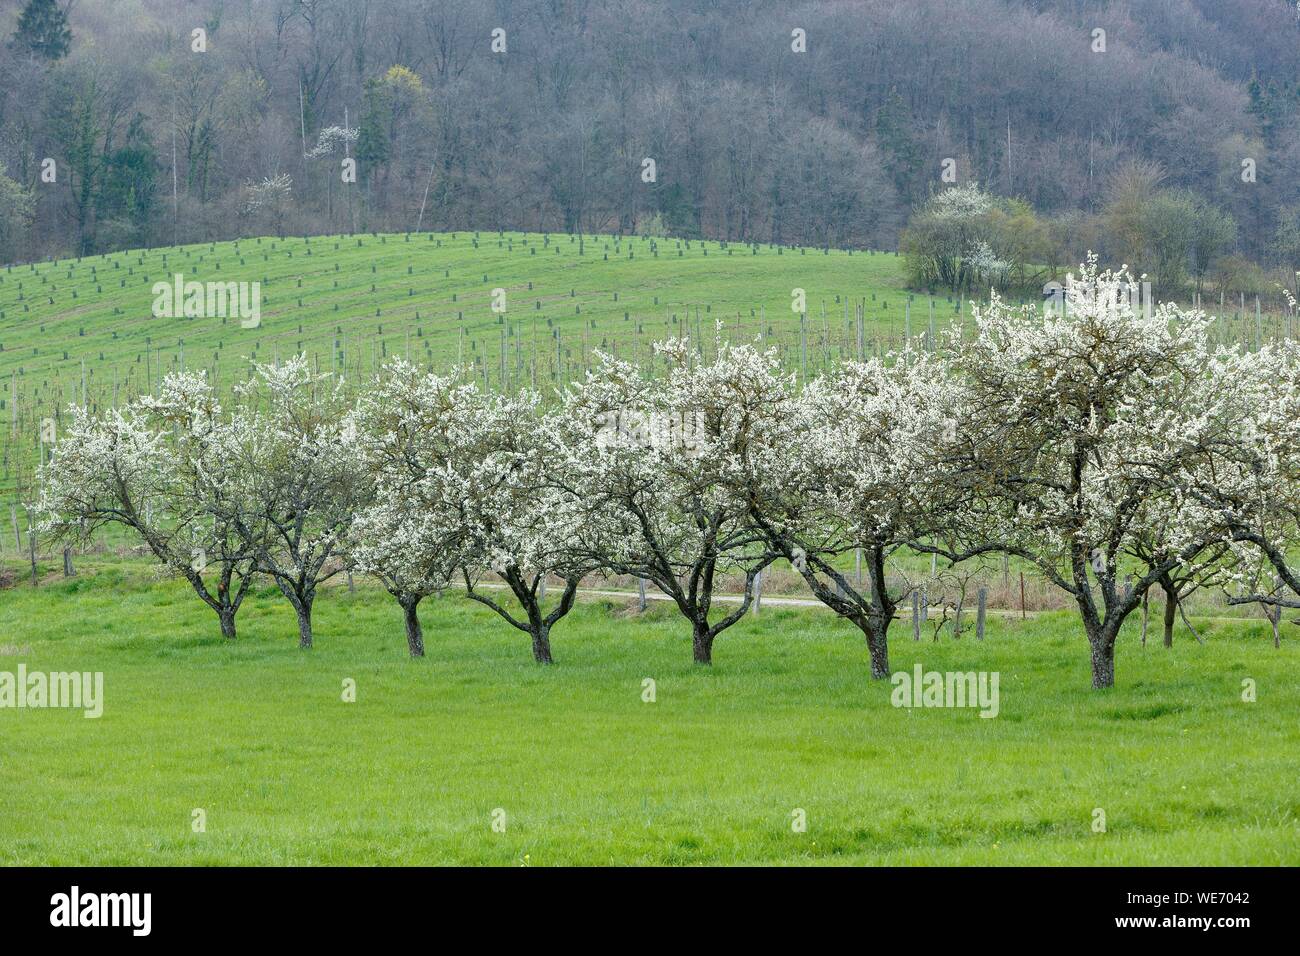 France, Meurthe et Moselle, Cotes de Toul, Boucq, cherry plum trees in bloom Stock Photo